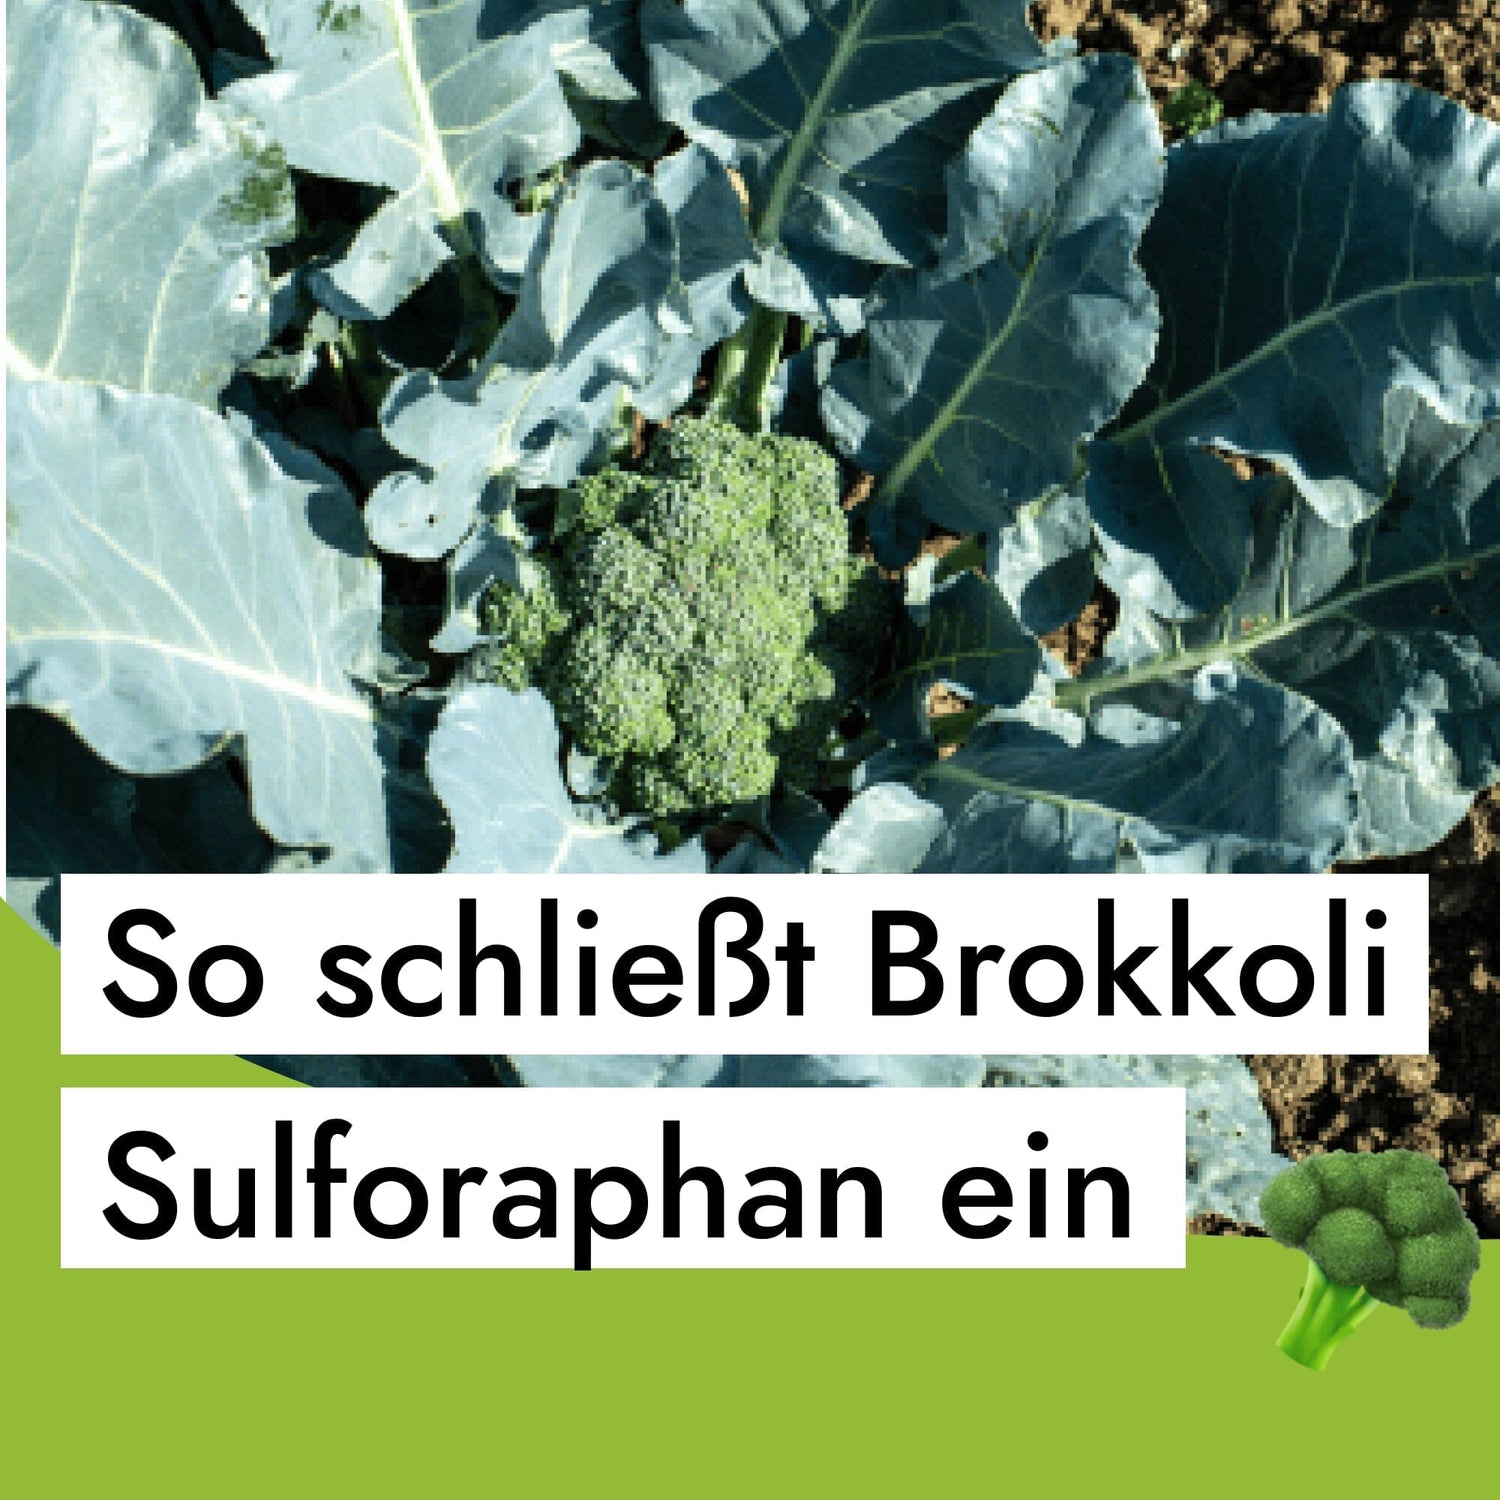 So schließt Brokkoli Sulforaphan weg - wie du mit Brokkolisprossen die Verriegelung öffnest